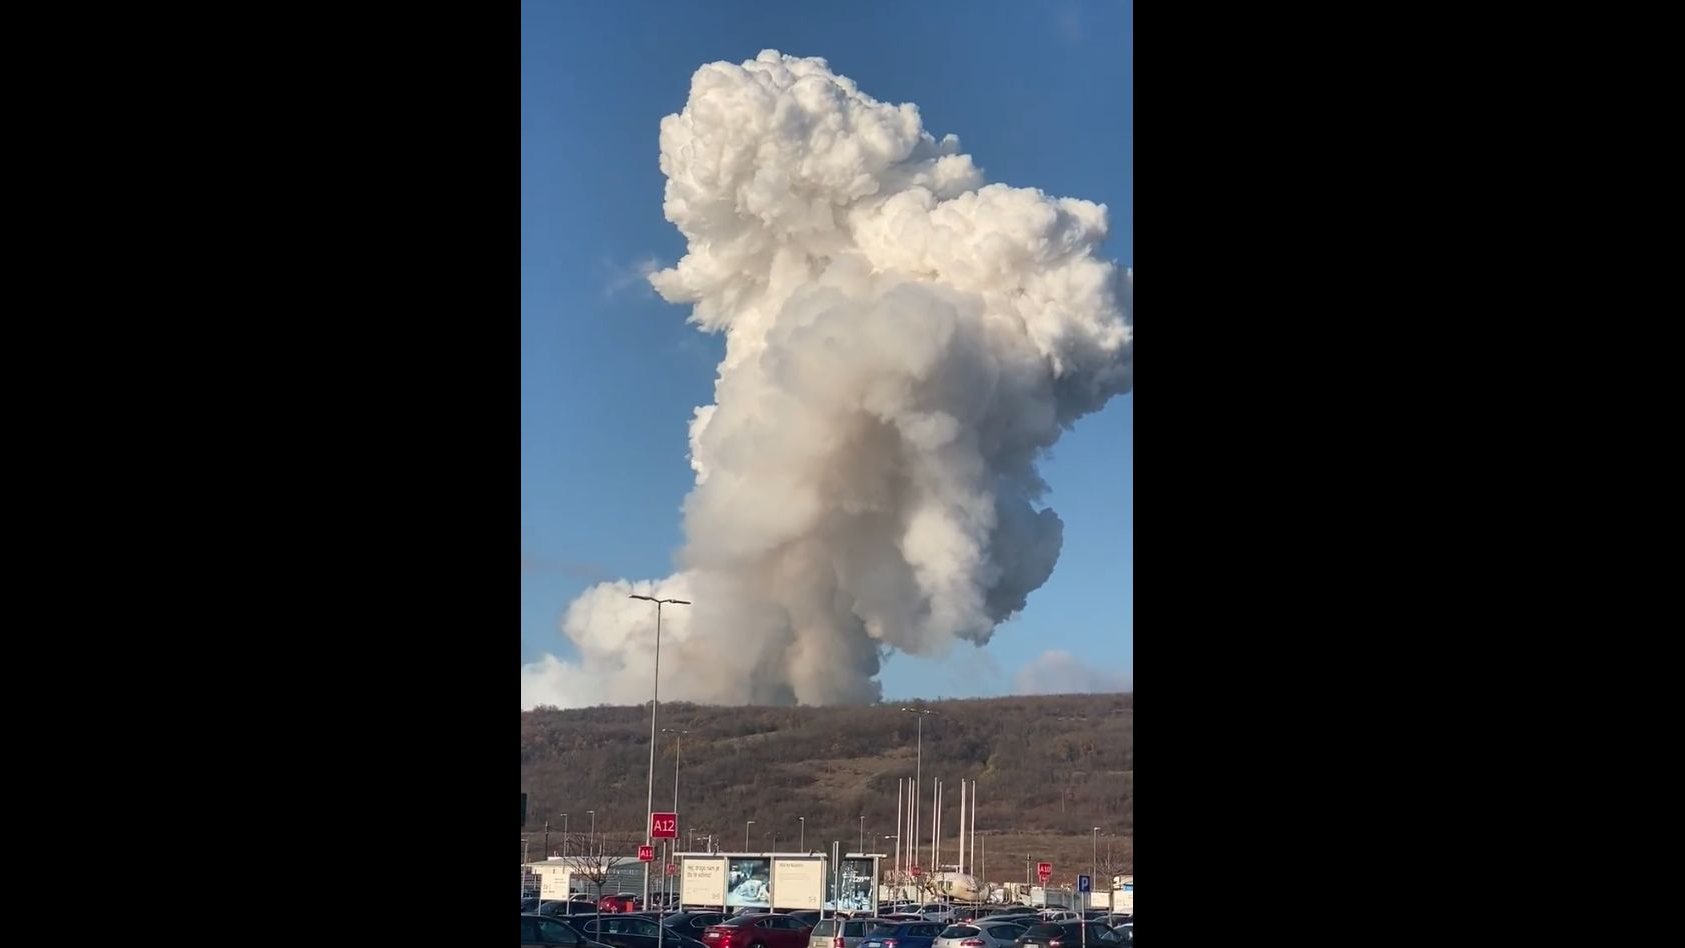 O momento da explosão foi captado em vídeo e partilhado nas redes sociais